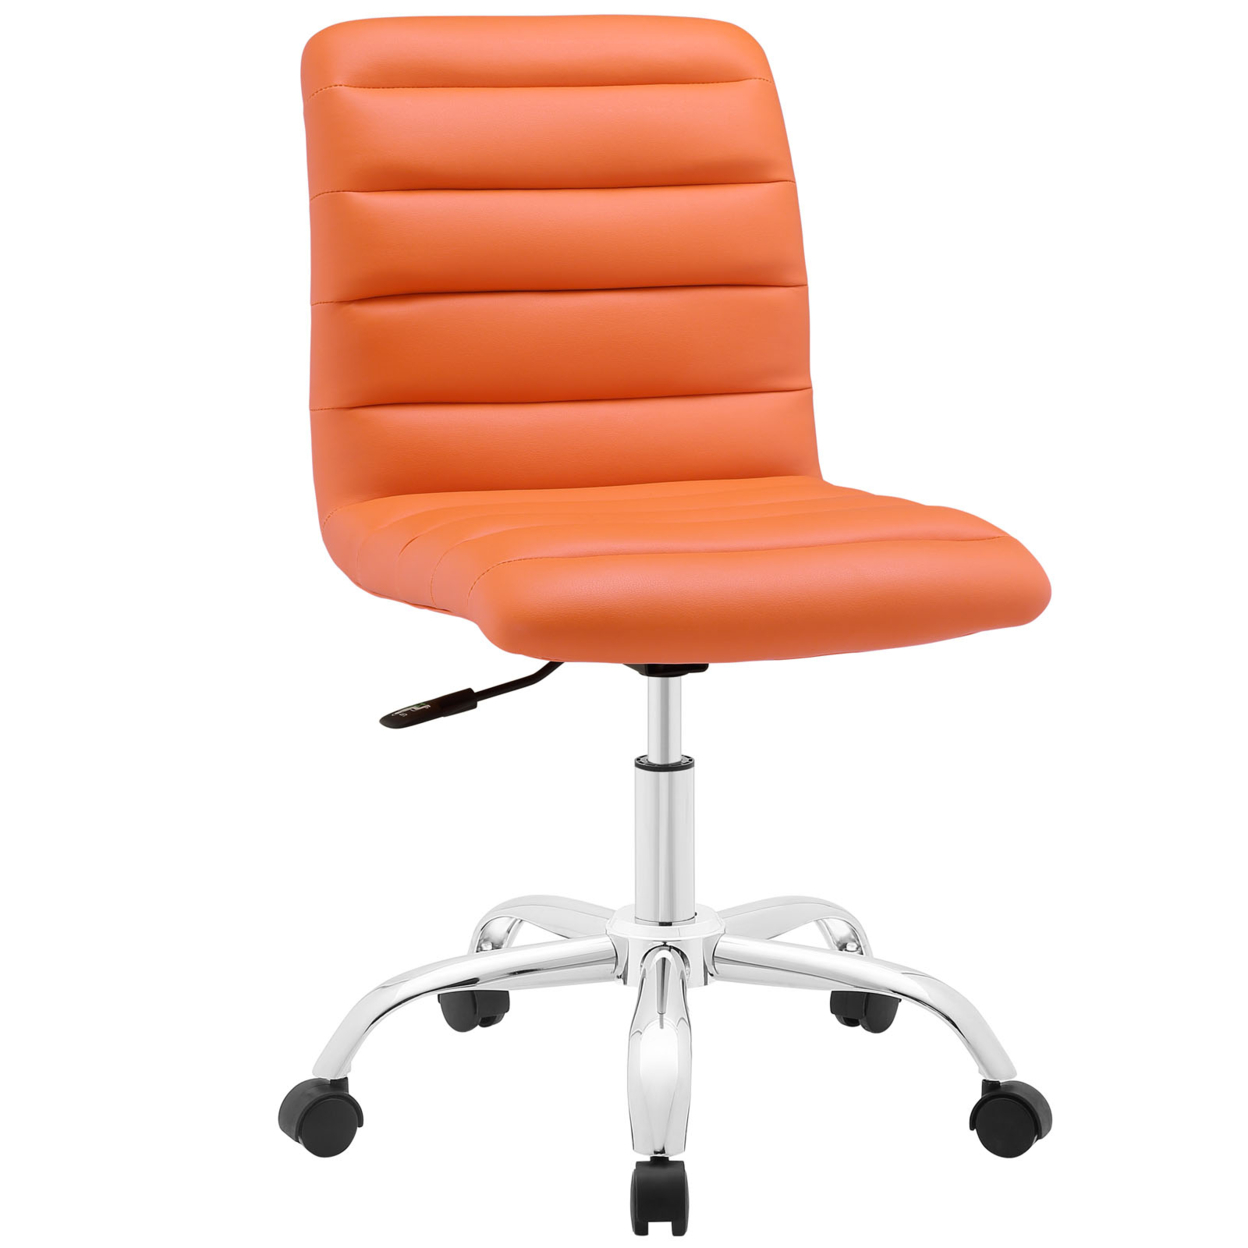 Ripple Armless Mid Back Office Chair, EEI-1532-ORA